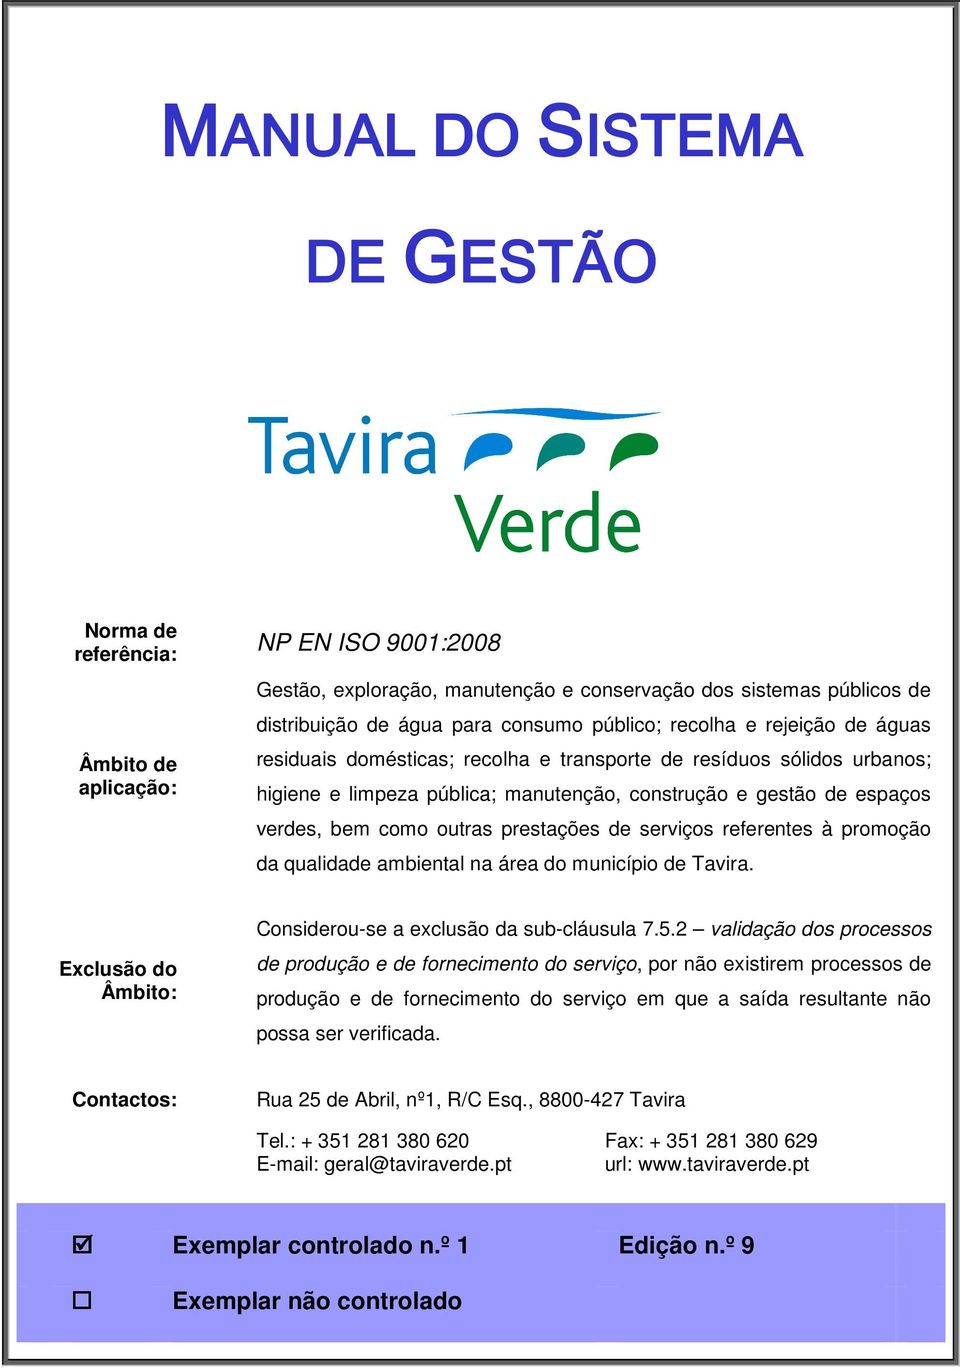 outras prestações de serviços referentes à promoção da qualidade ambiental na área do município de Tavira. Exclusão do Âmbito: Considerou-se a exclusão da sub-cláusula 7.5.